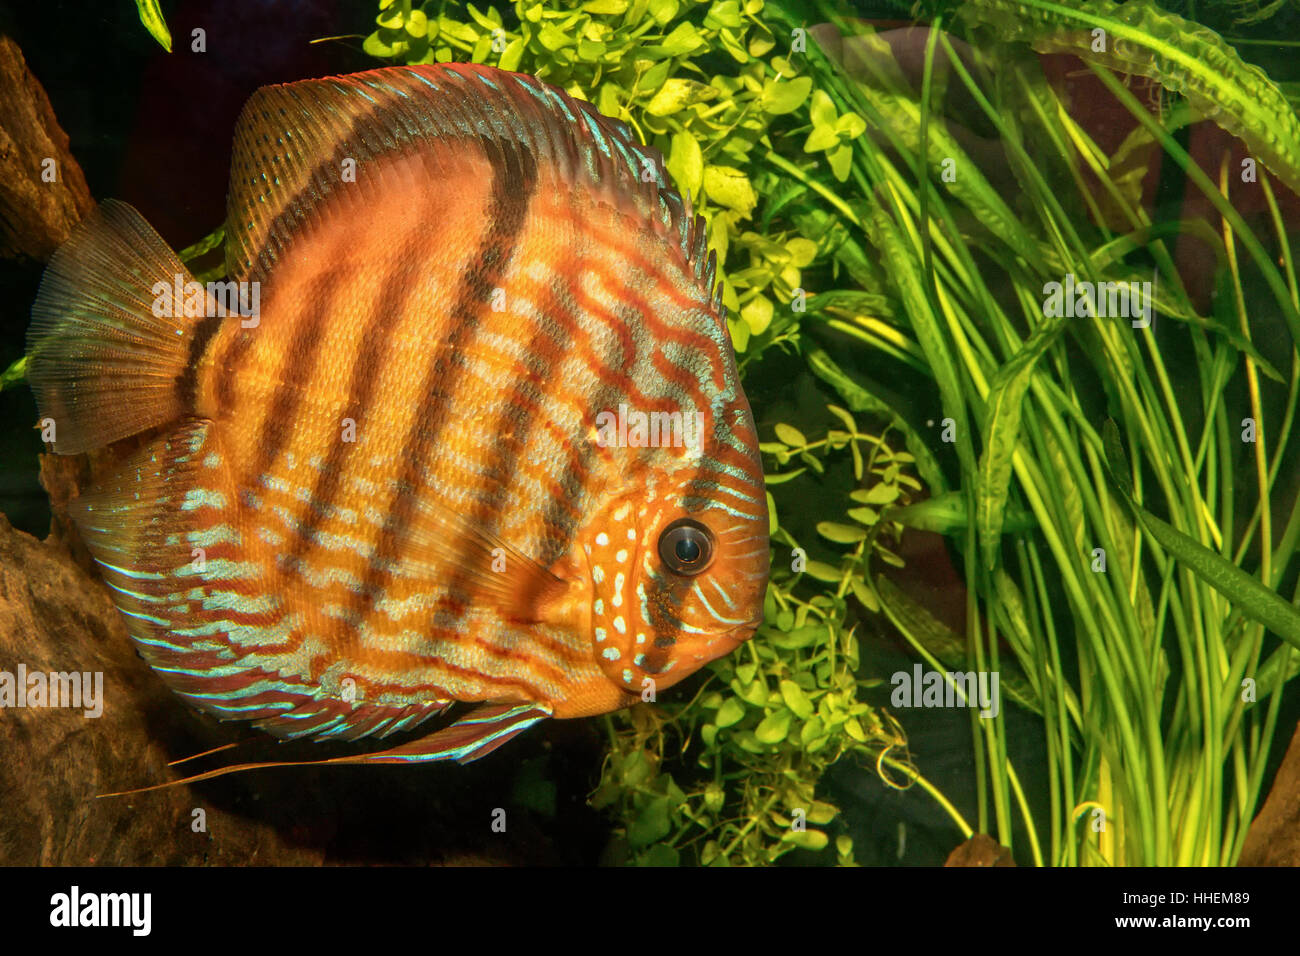 Portrait of discus fish (Symphysodon discus) in a aquarium Stock Photo